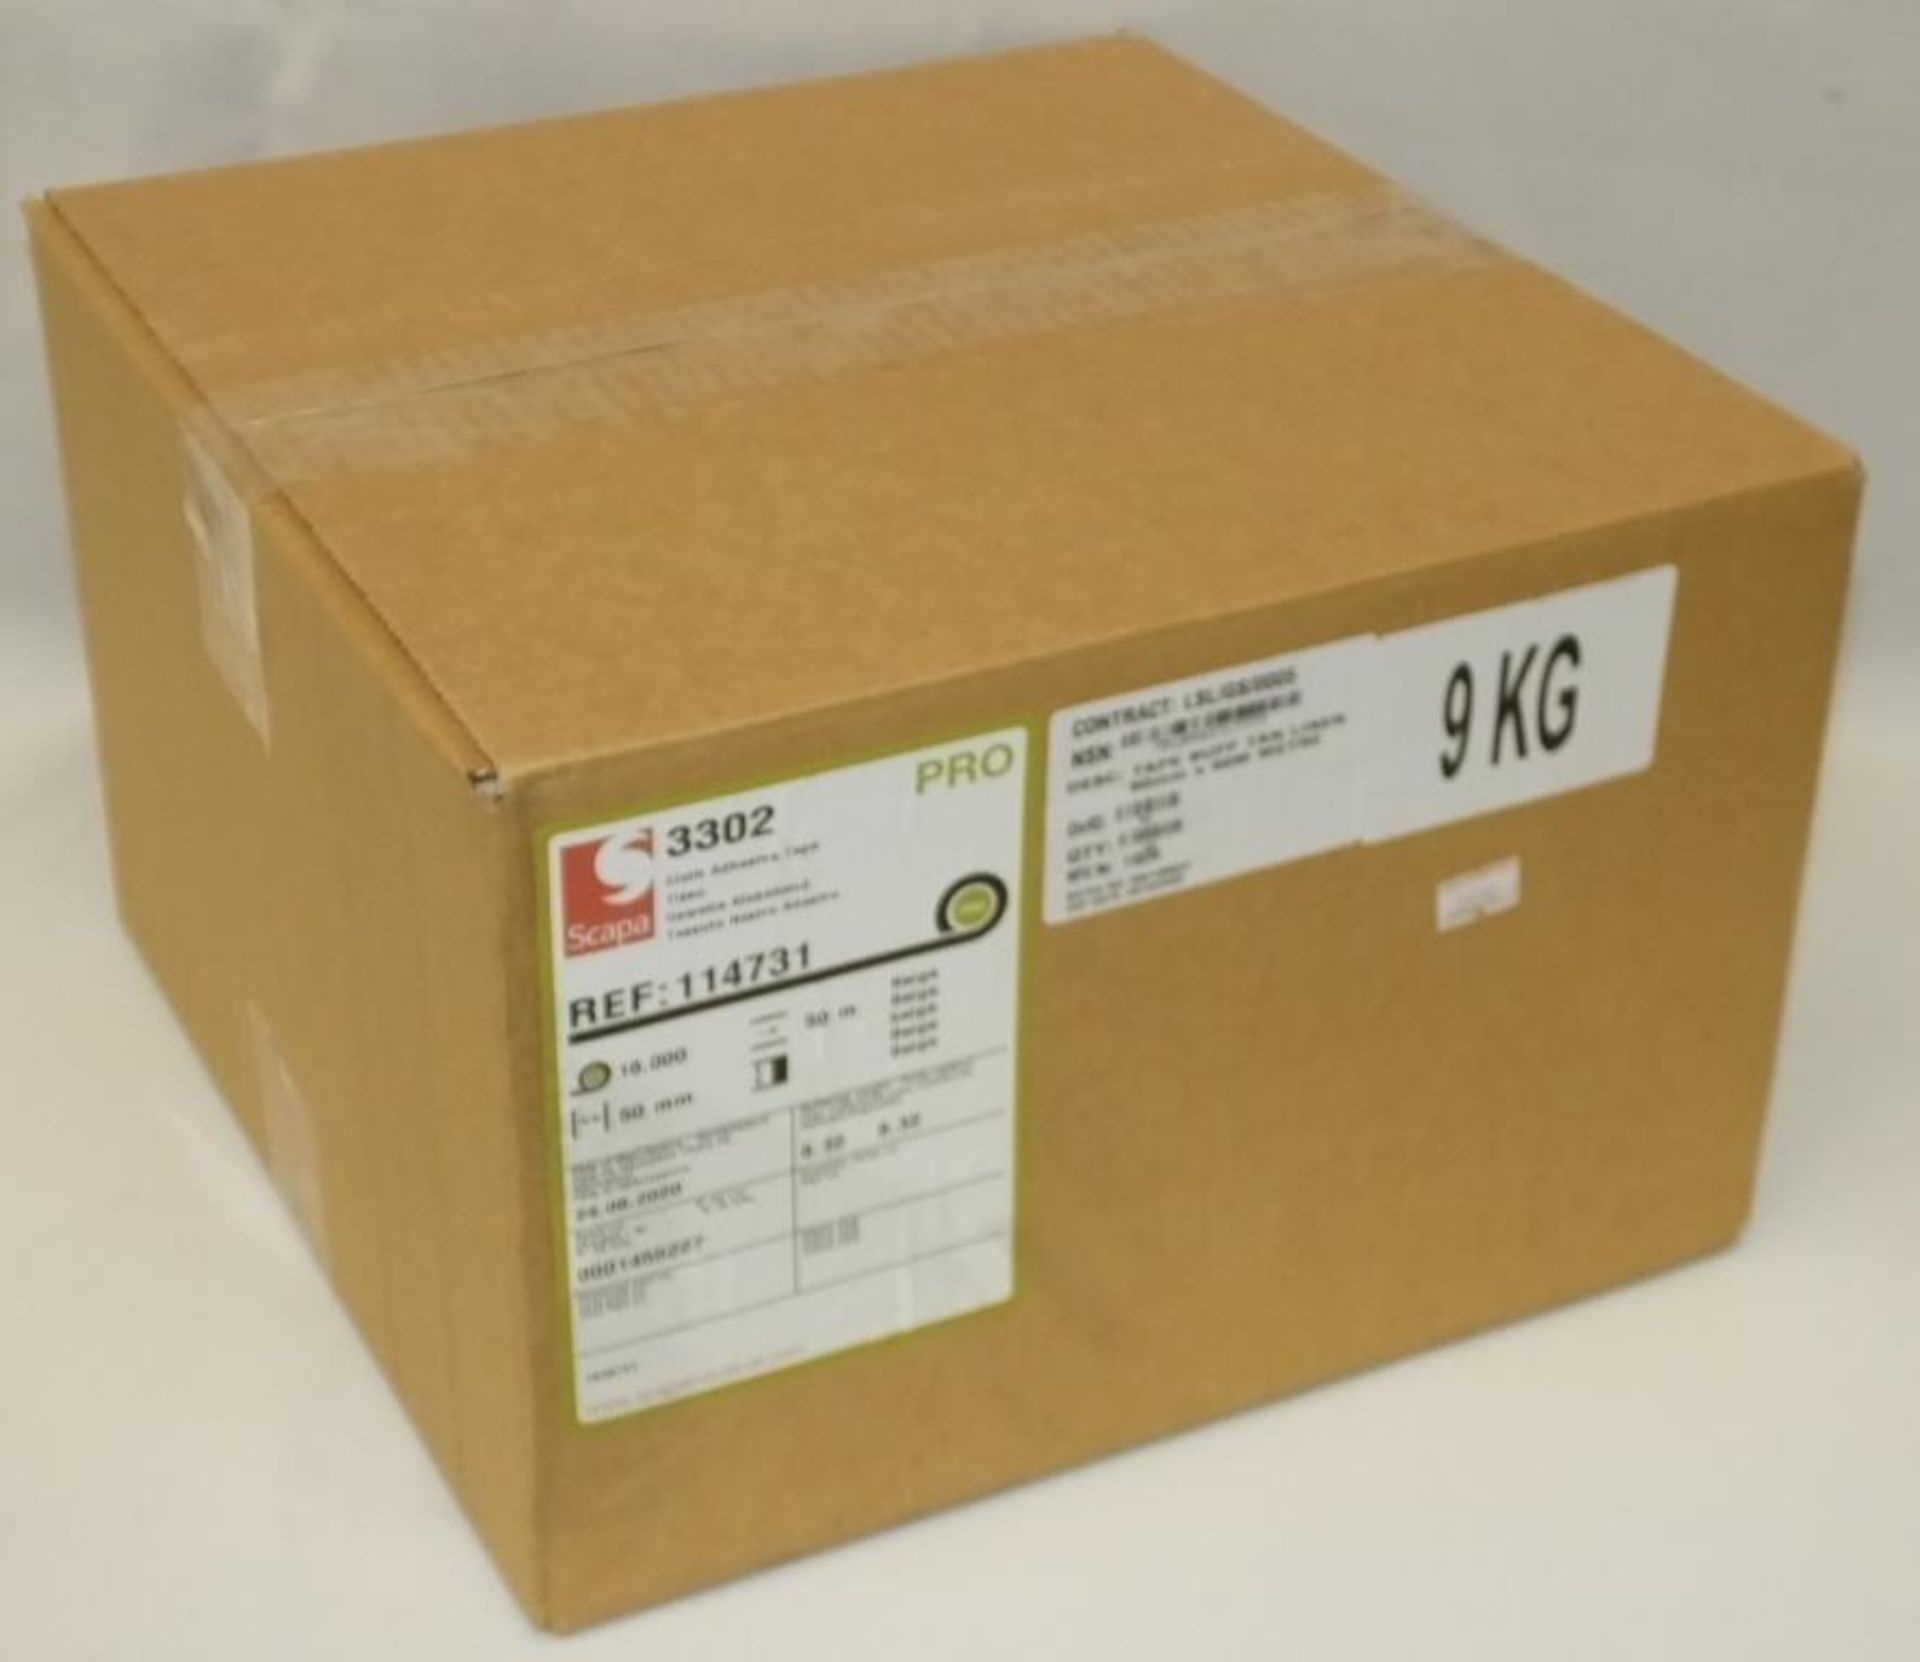 Scapa 3302 Pro Tape - Buff Tan Biege - 50mm x 50M rolls - 16 rolls per box - 1 box - Image 2 of 5